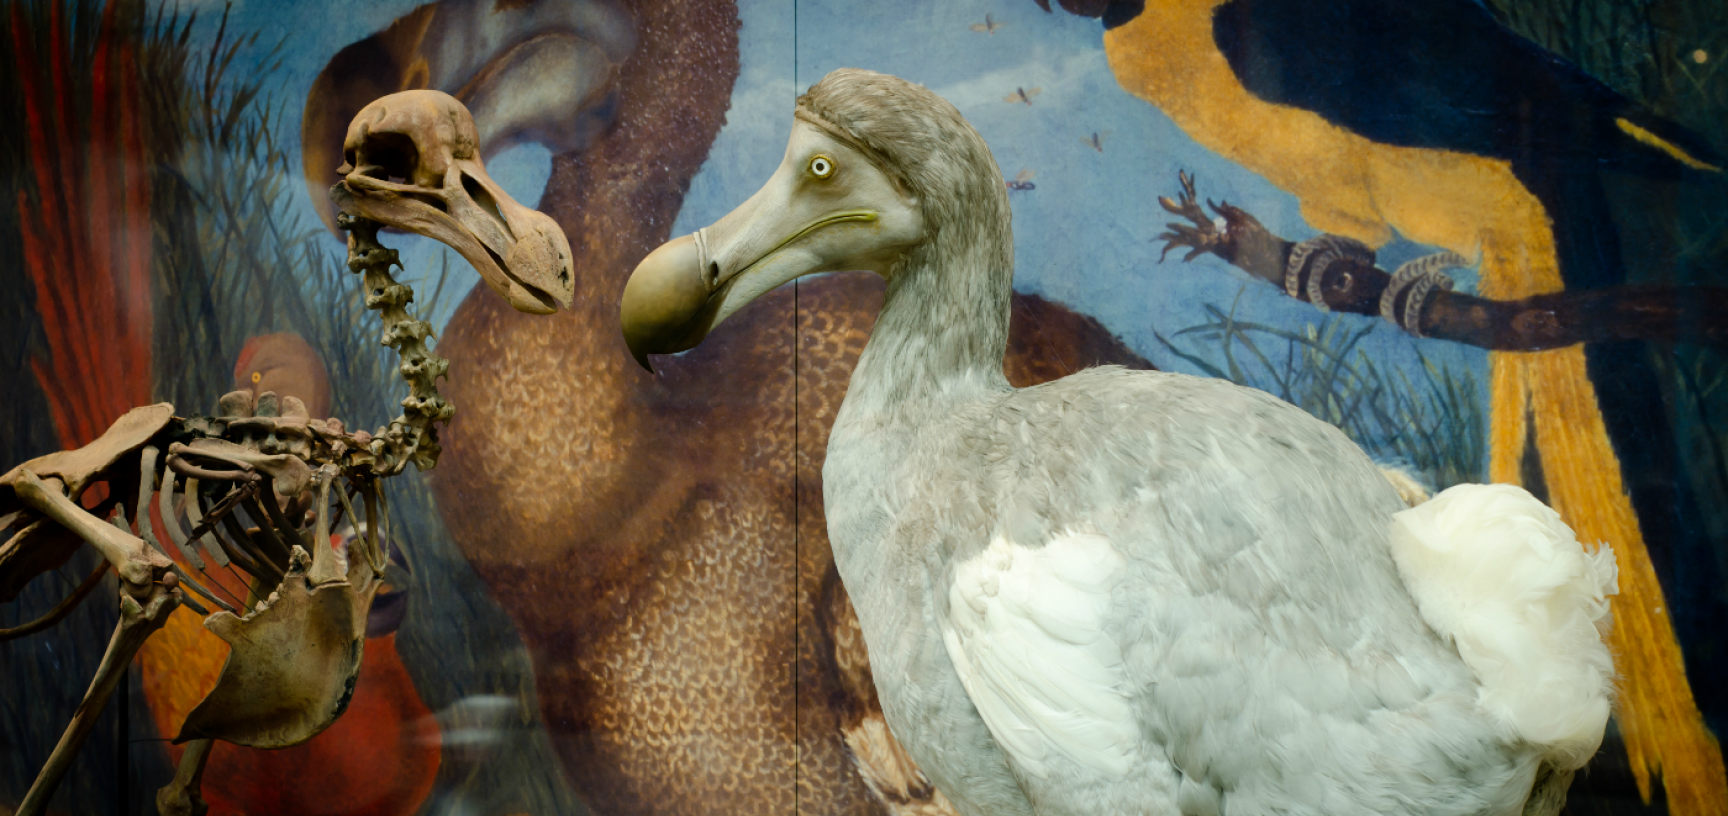 Dodo model on display